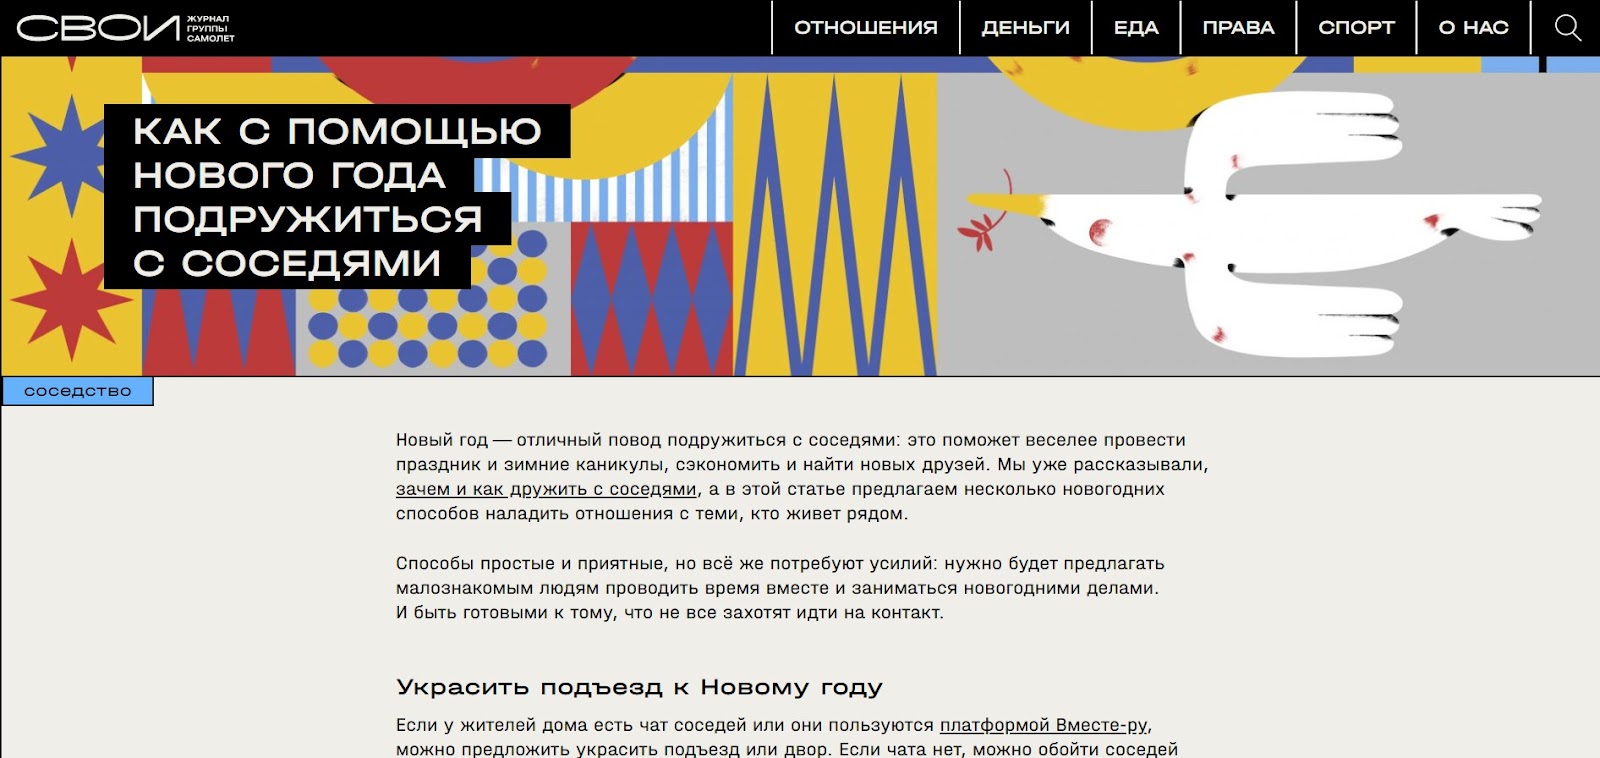 Девелопер «Самолет» продвигает в журнале свой сервис Вместе.ру